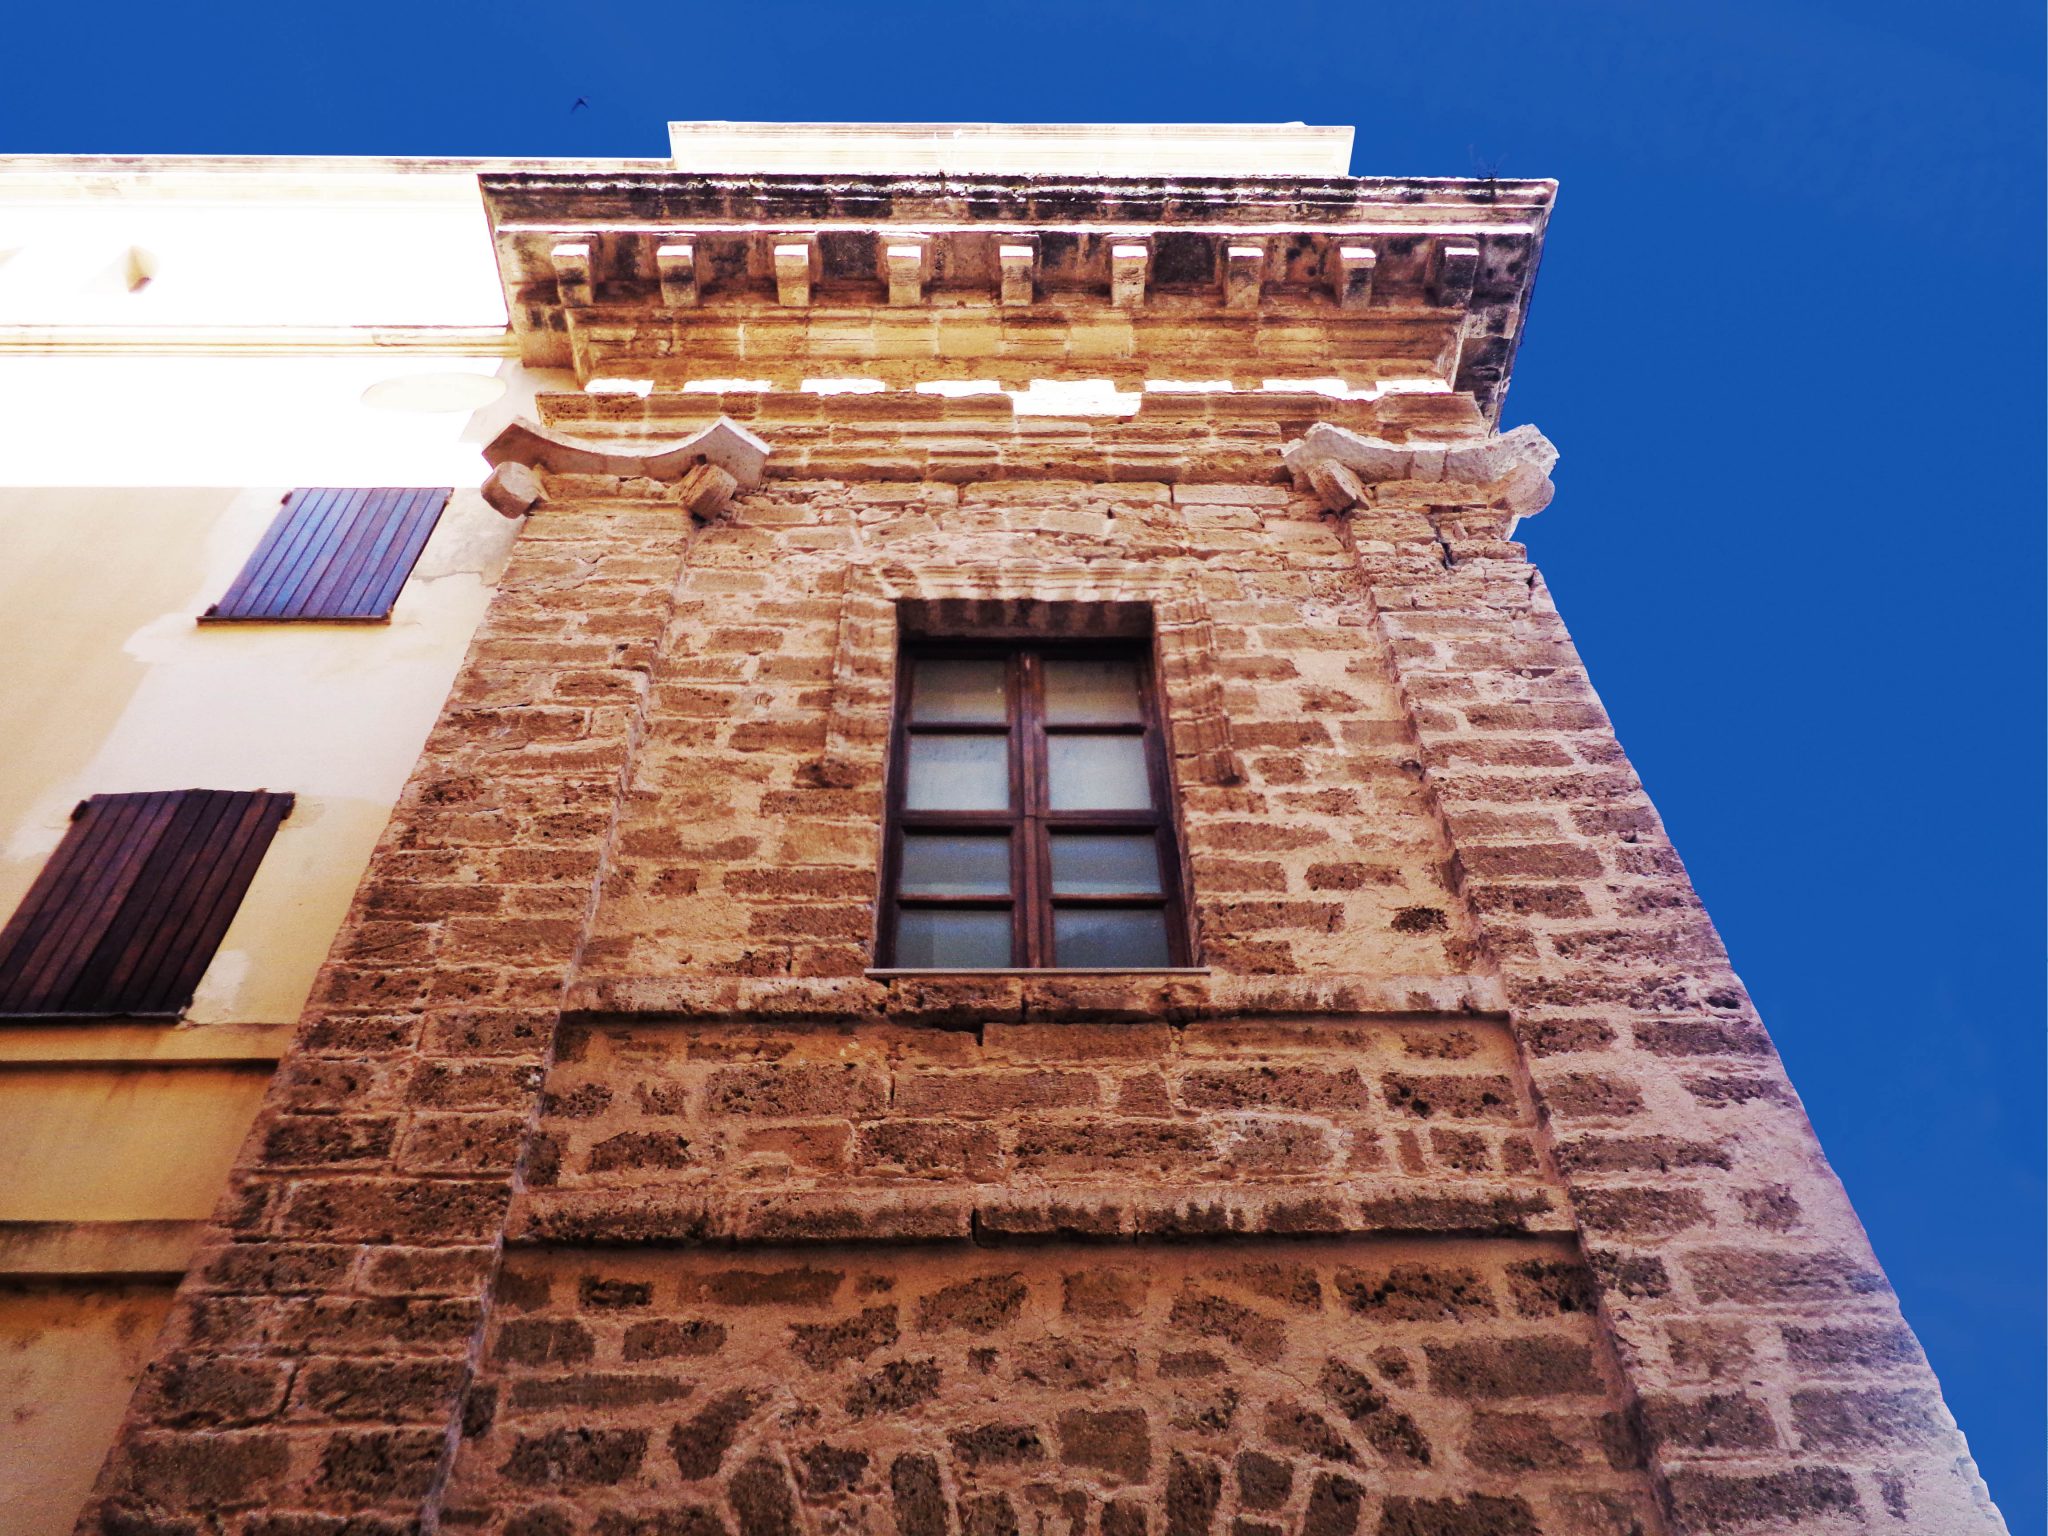 Dettaglio della facciata laterale in via Principe Umberto.